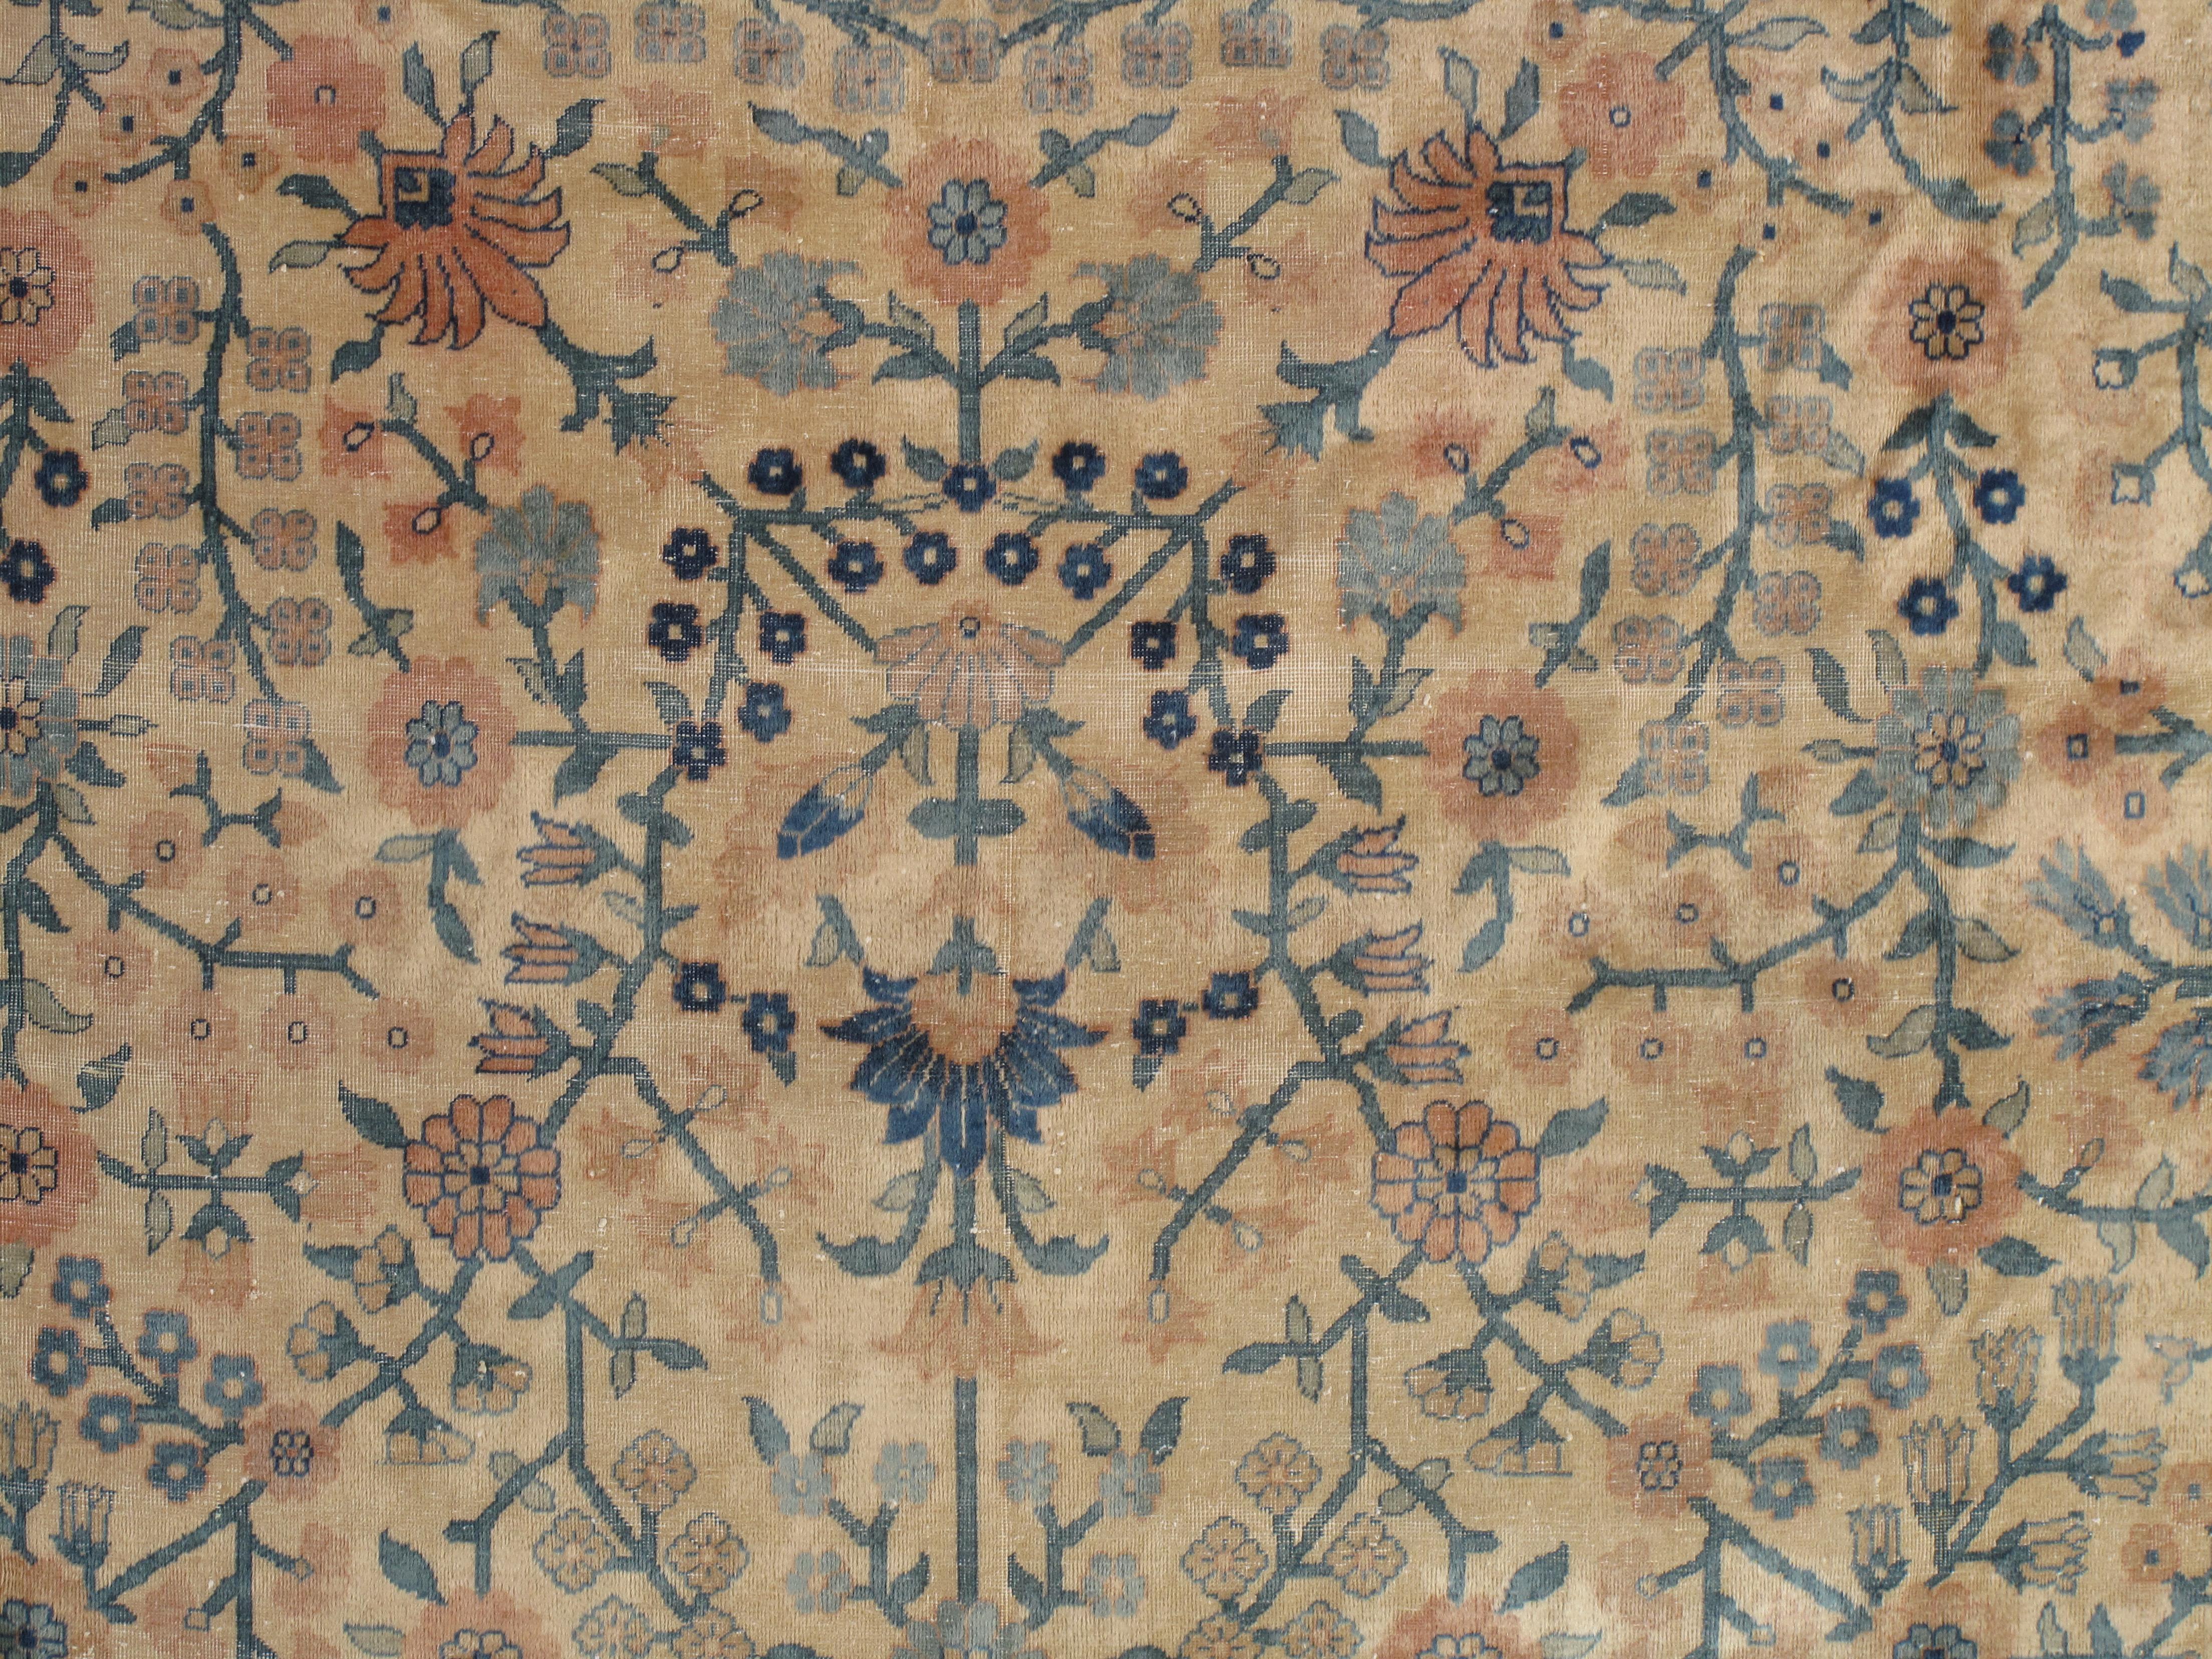 Noué à la main Tapis oriental indien antique d'Amritsar fait main, motif de motifs bleus, taupes et crèmes sur toute la surface en vente